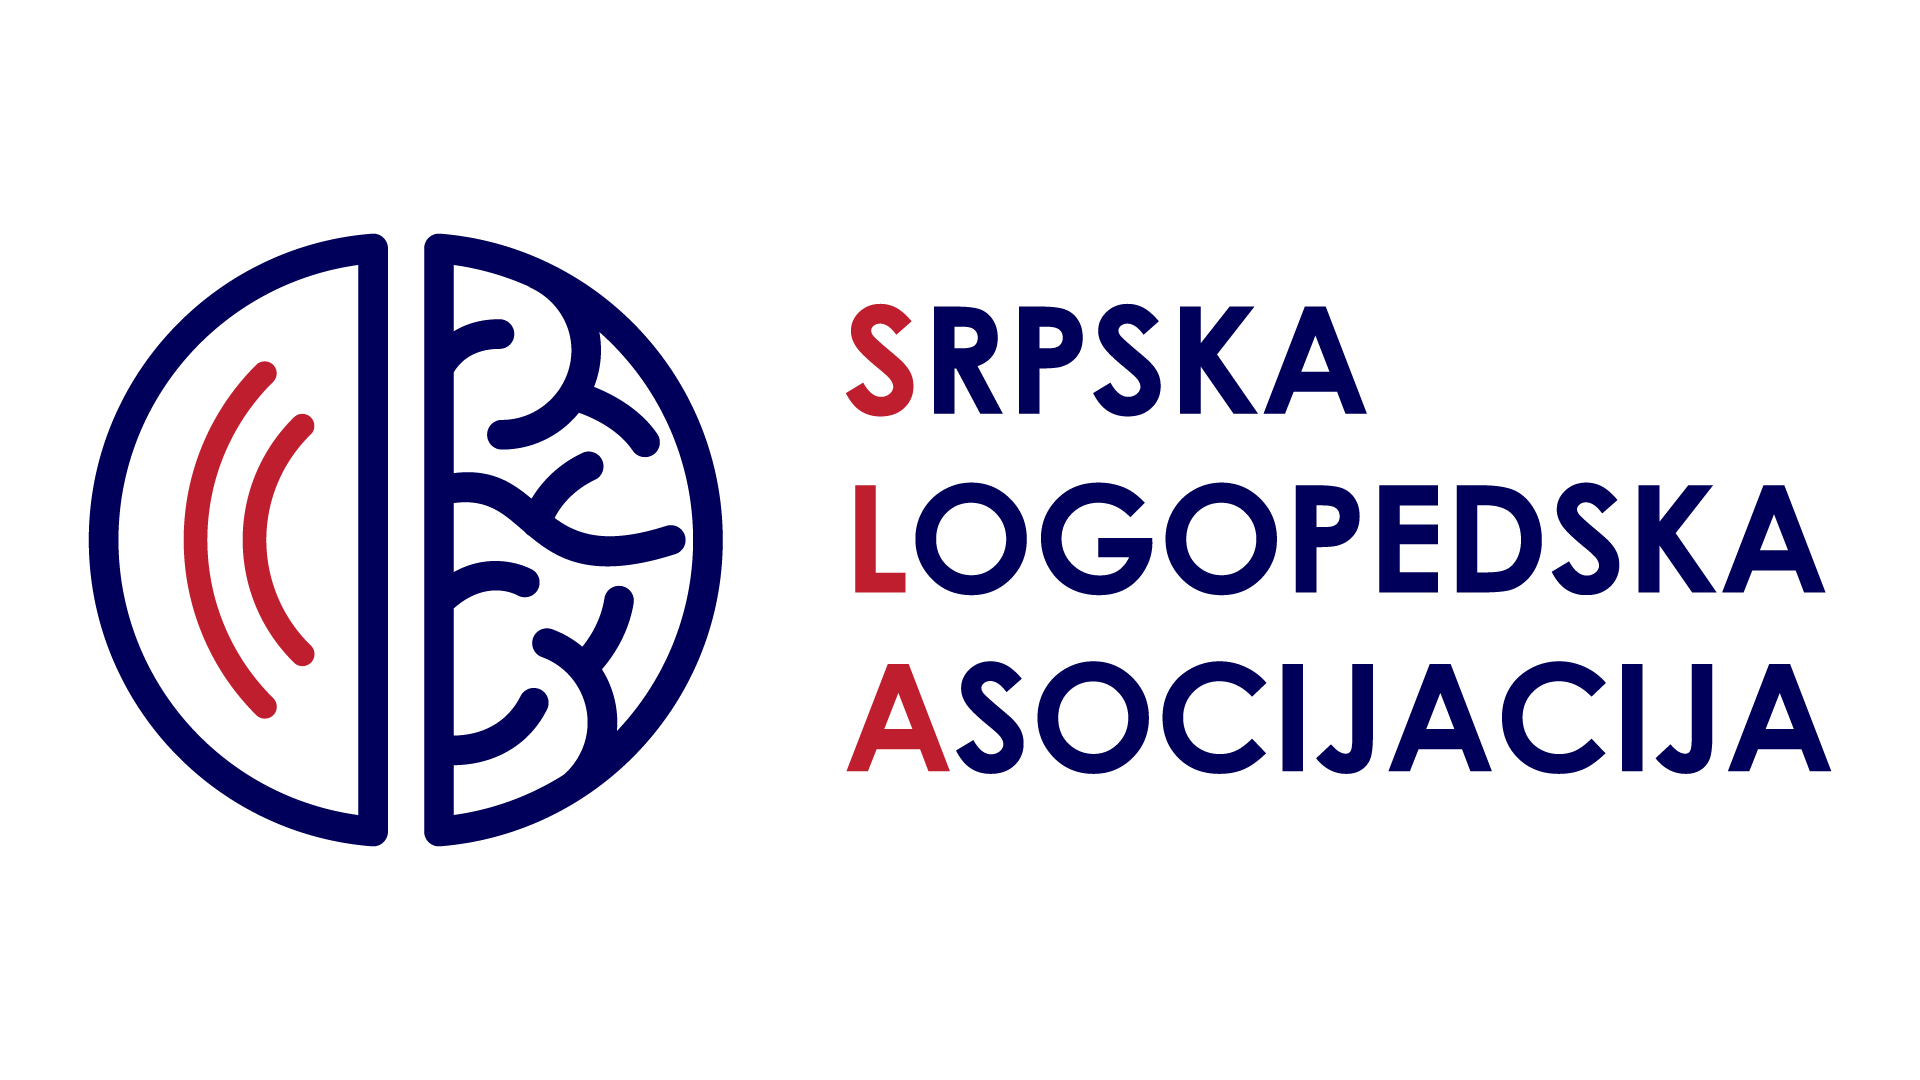 Srpska logopedska asocijacija v2 web png